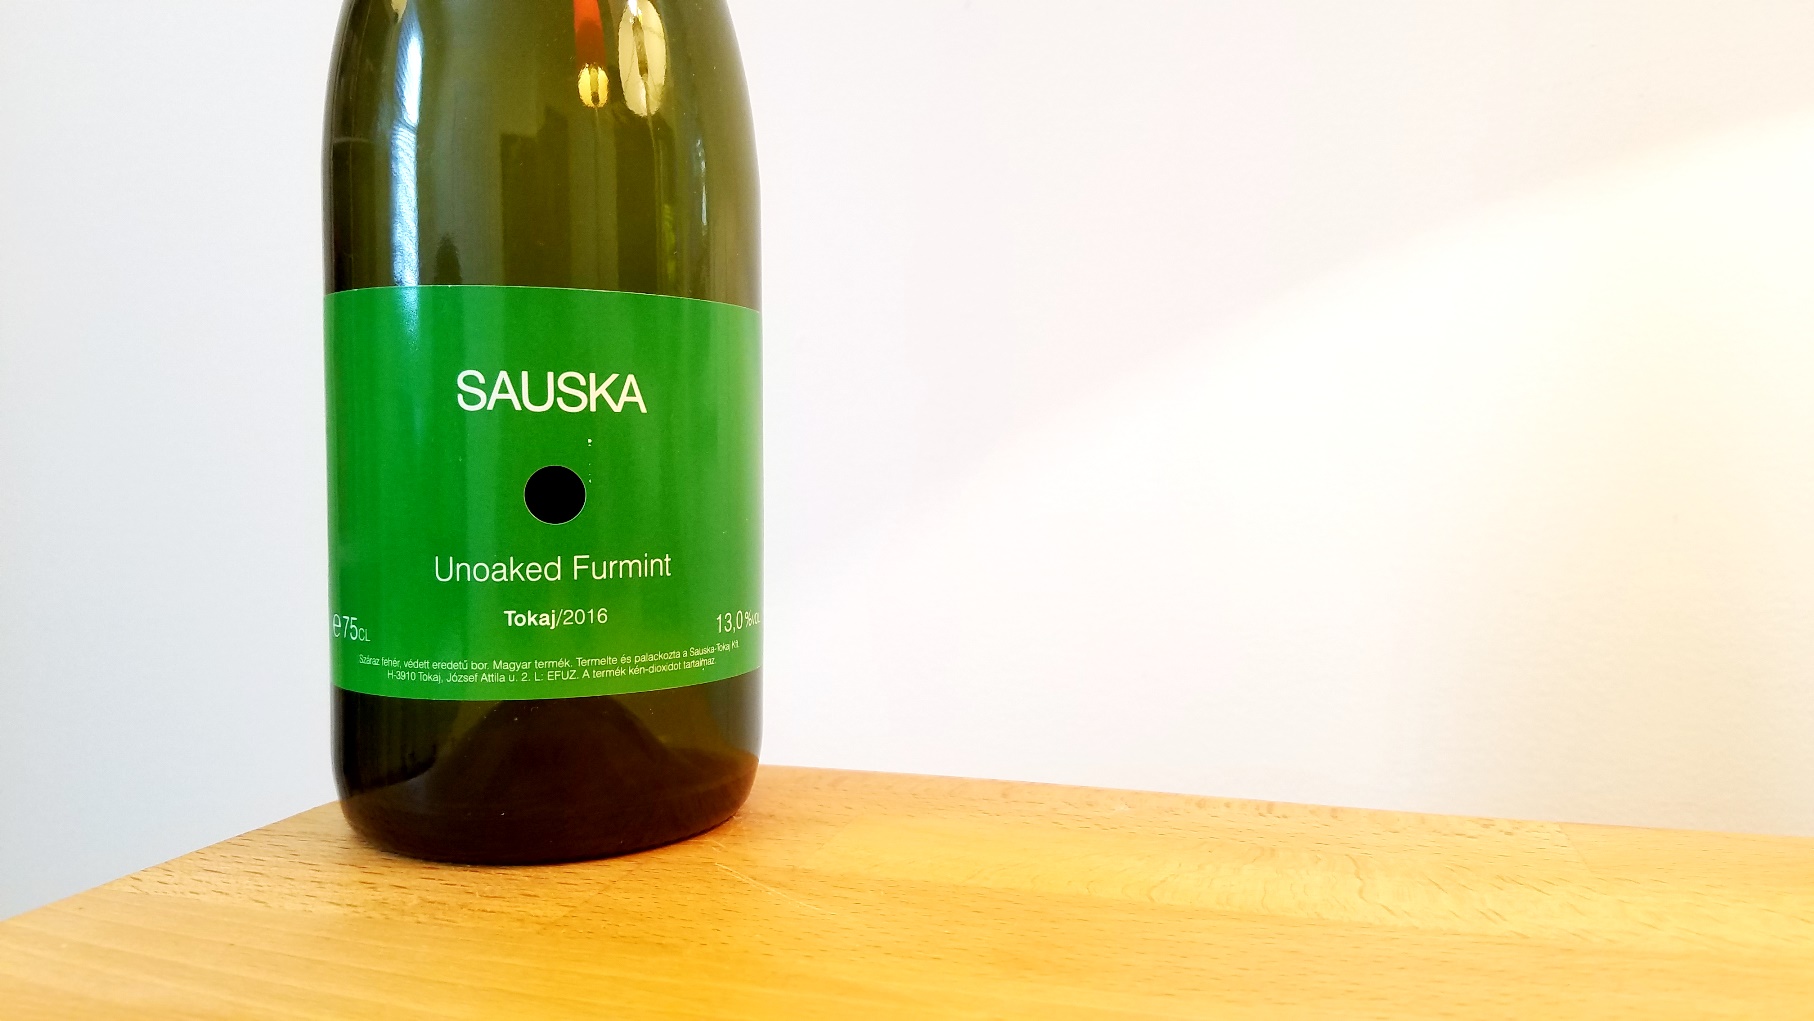 Sauska, Unoaked Furmint 2016, Tokaj, Hungary, Wine Casual